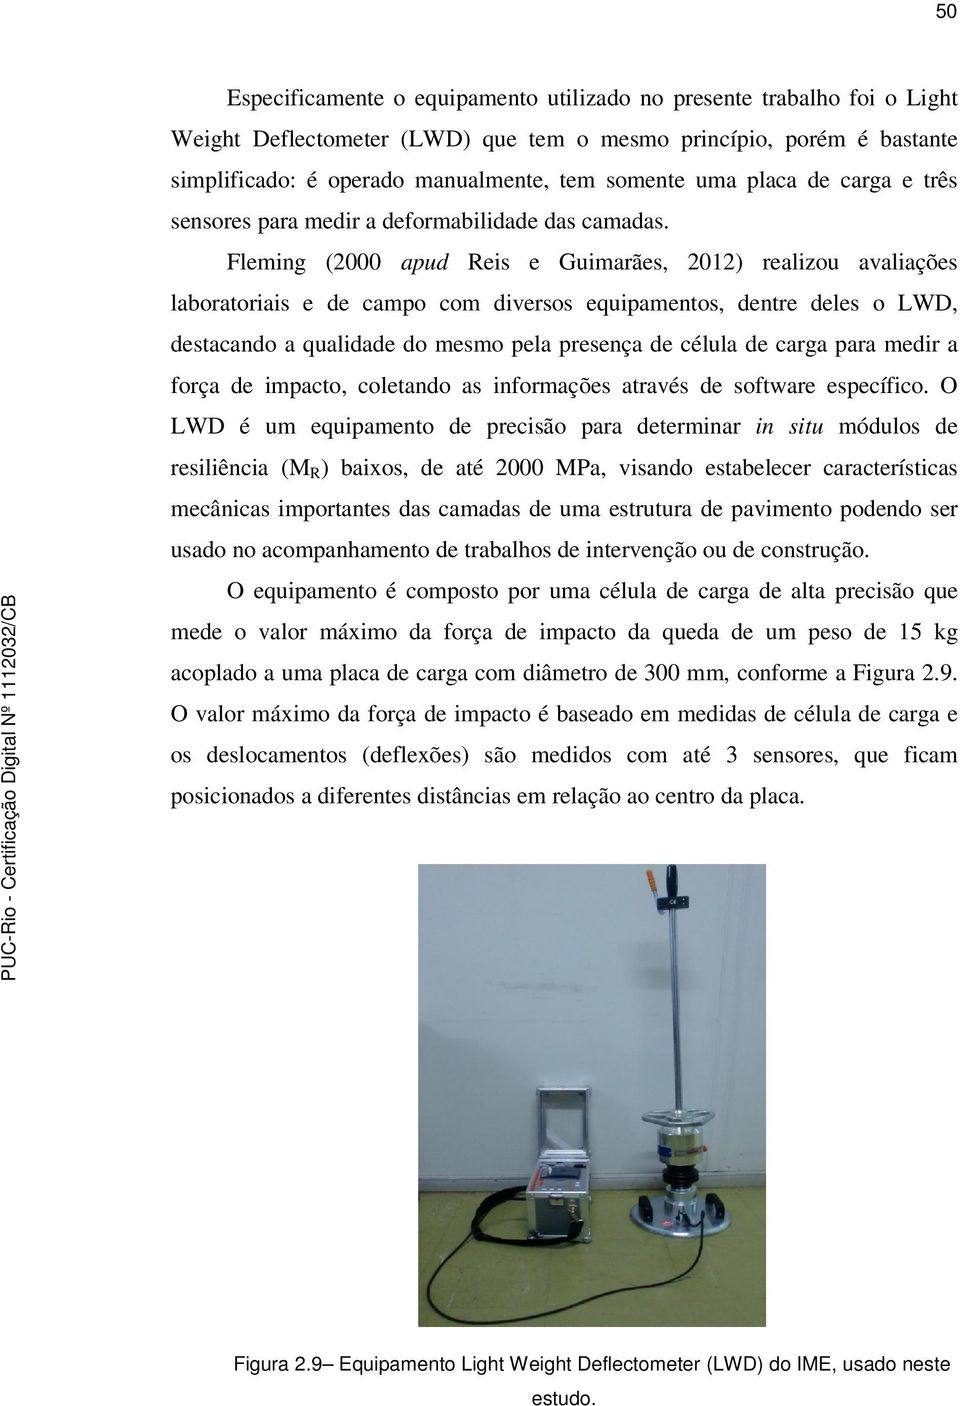 Fleming (2000 apud Reis e Guimarães, 2012) realizou avaliações laboratoriais e de campo com diversos equipamentos, dentre deles o LWD, destacando a qualidade do mesmo pela presença de célula de carga